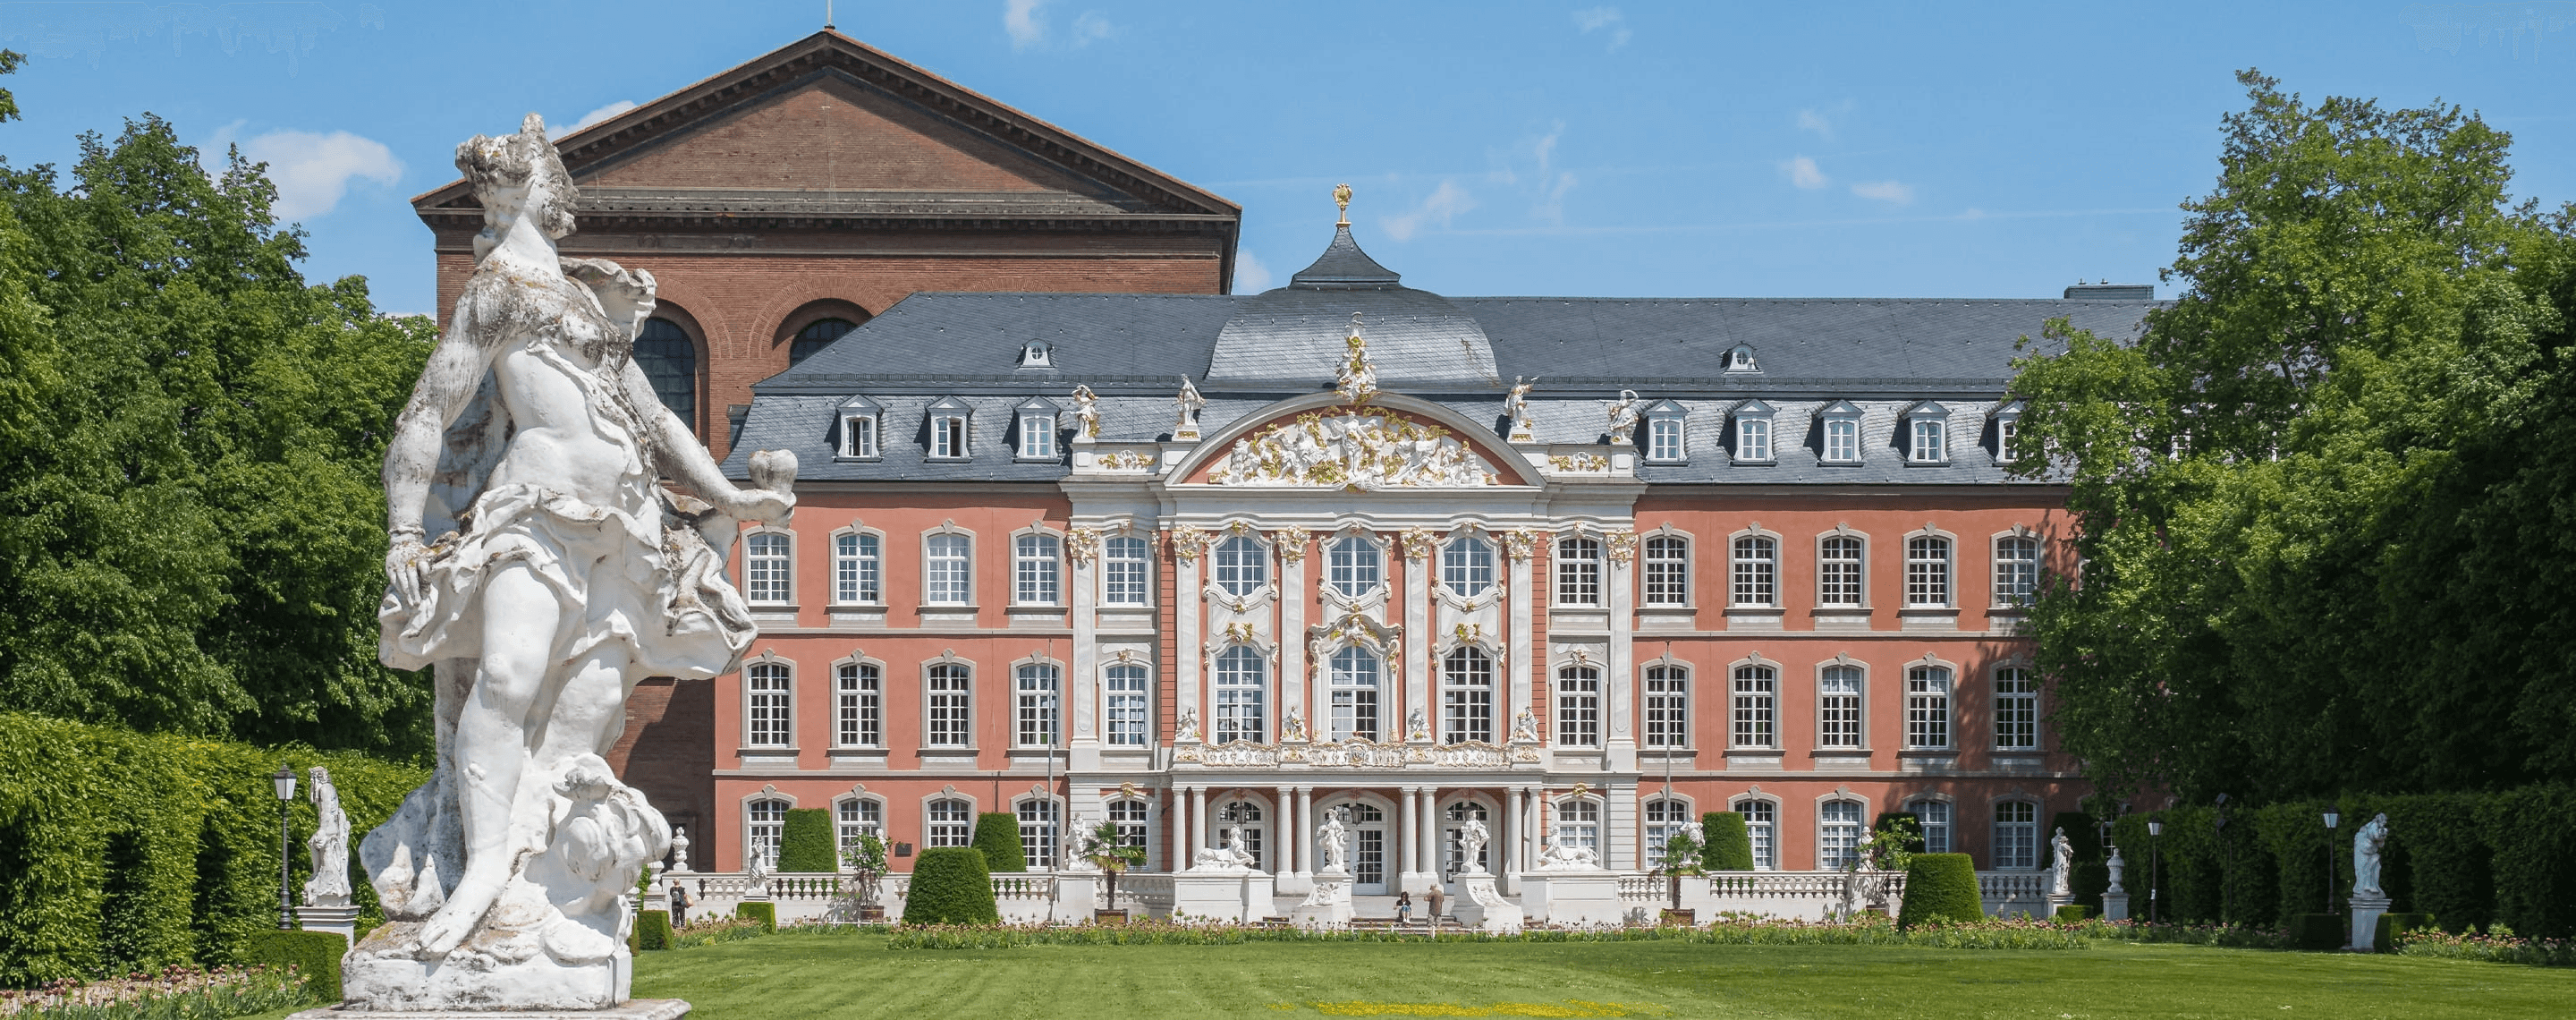 Universitätsgebäude in Trier mit Statue im Vordergrund